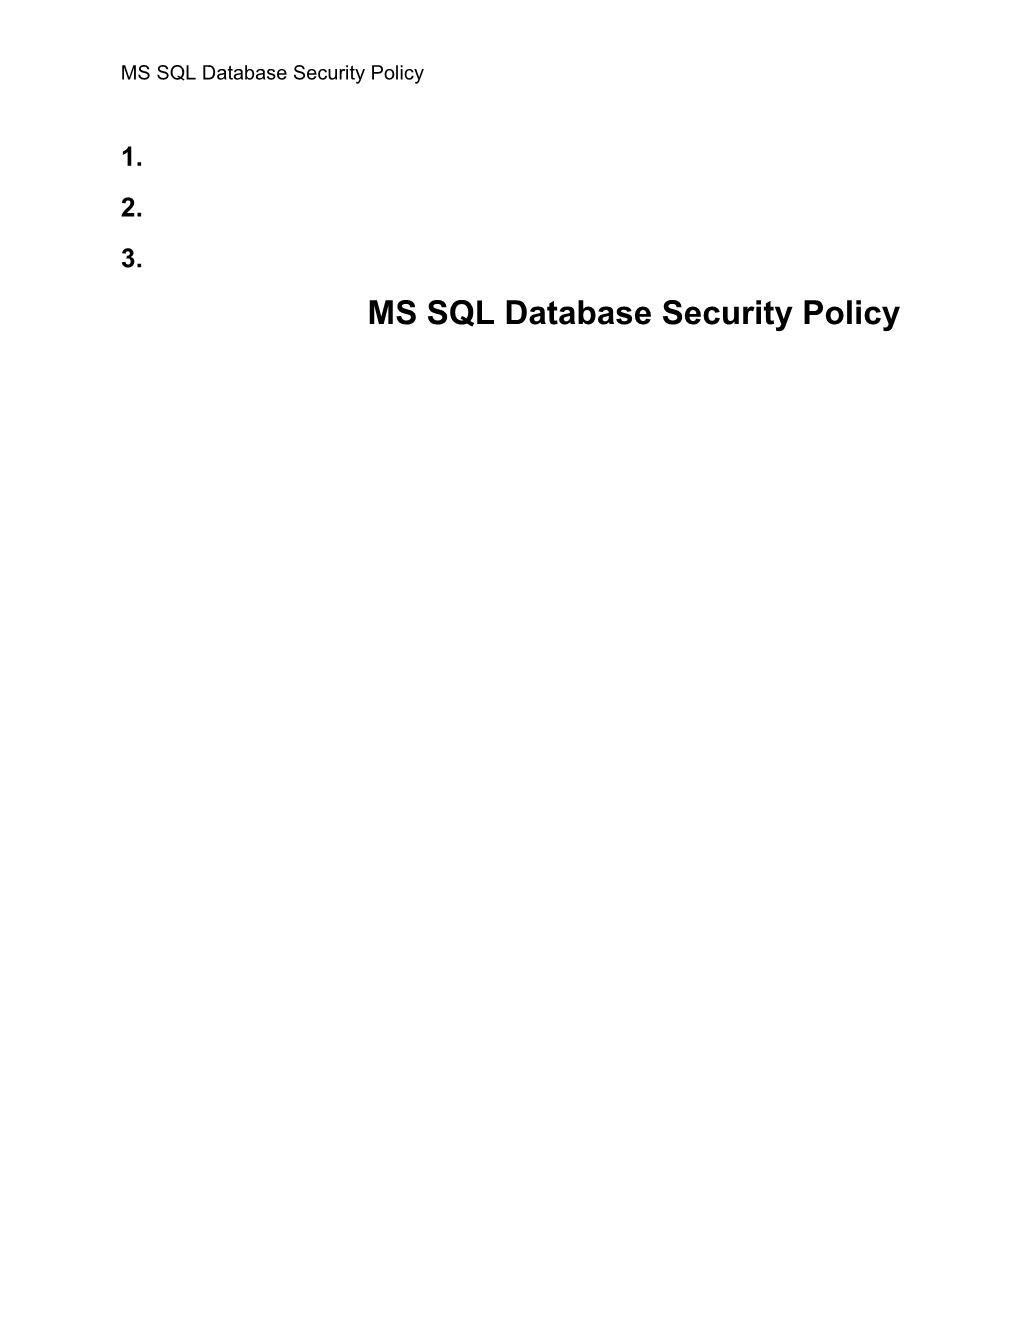 SQL Database Security Standard